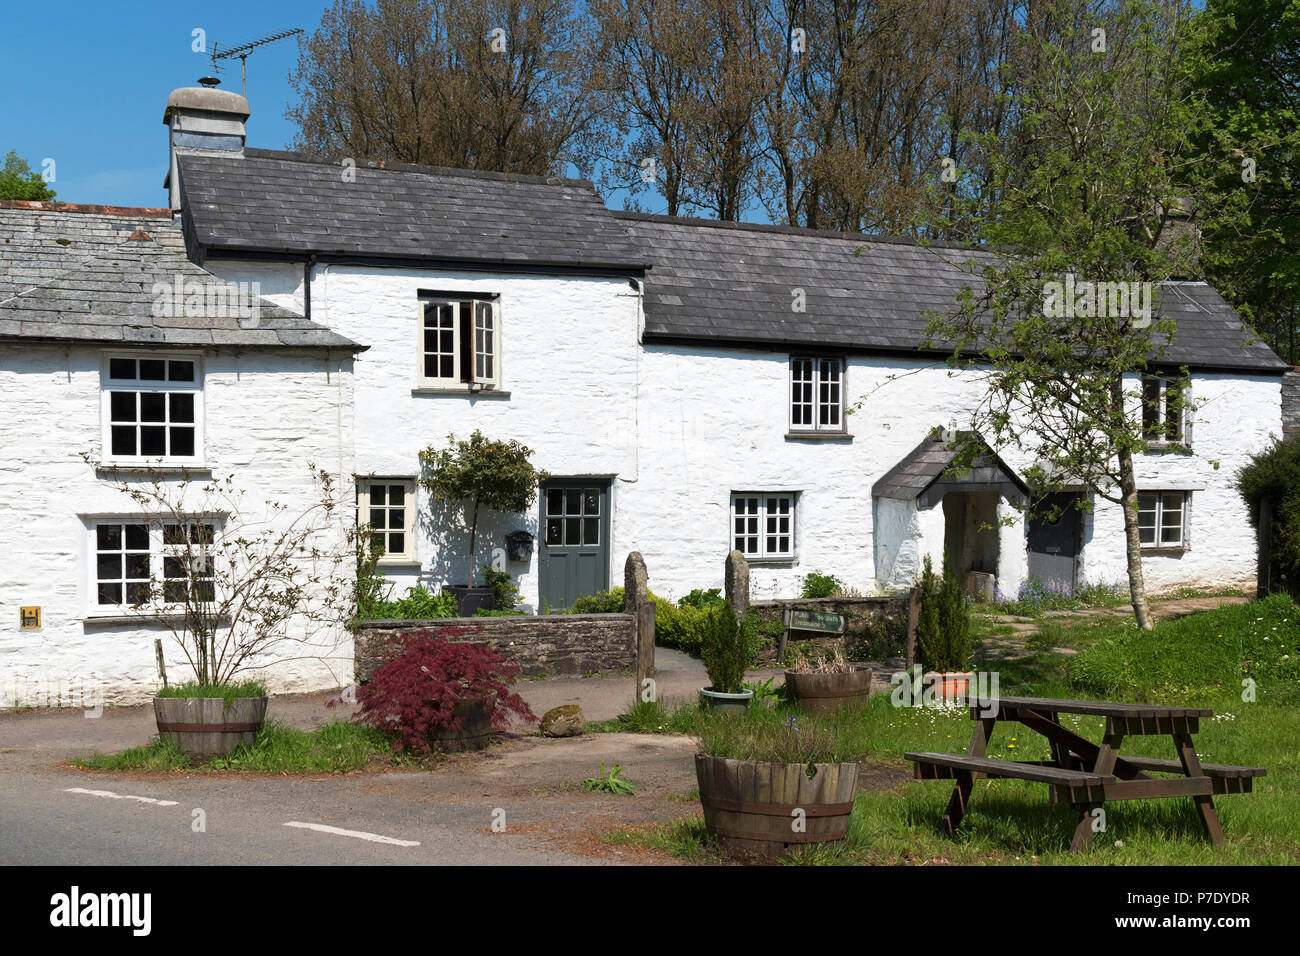 Cottages traditionnels blanchis à la chaux dans le village de altarnun, Cornwall, Angleterre, Grande-Bretagne, Royaume-Uni. Banque D'Images